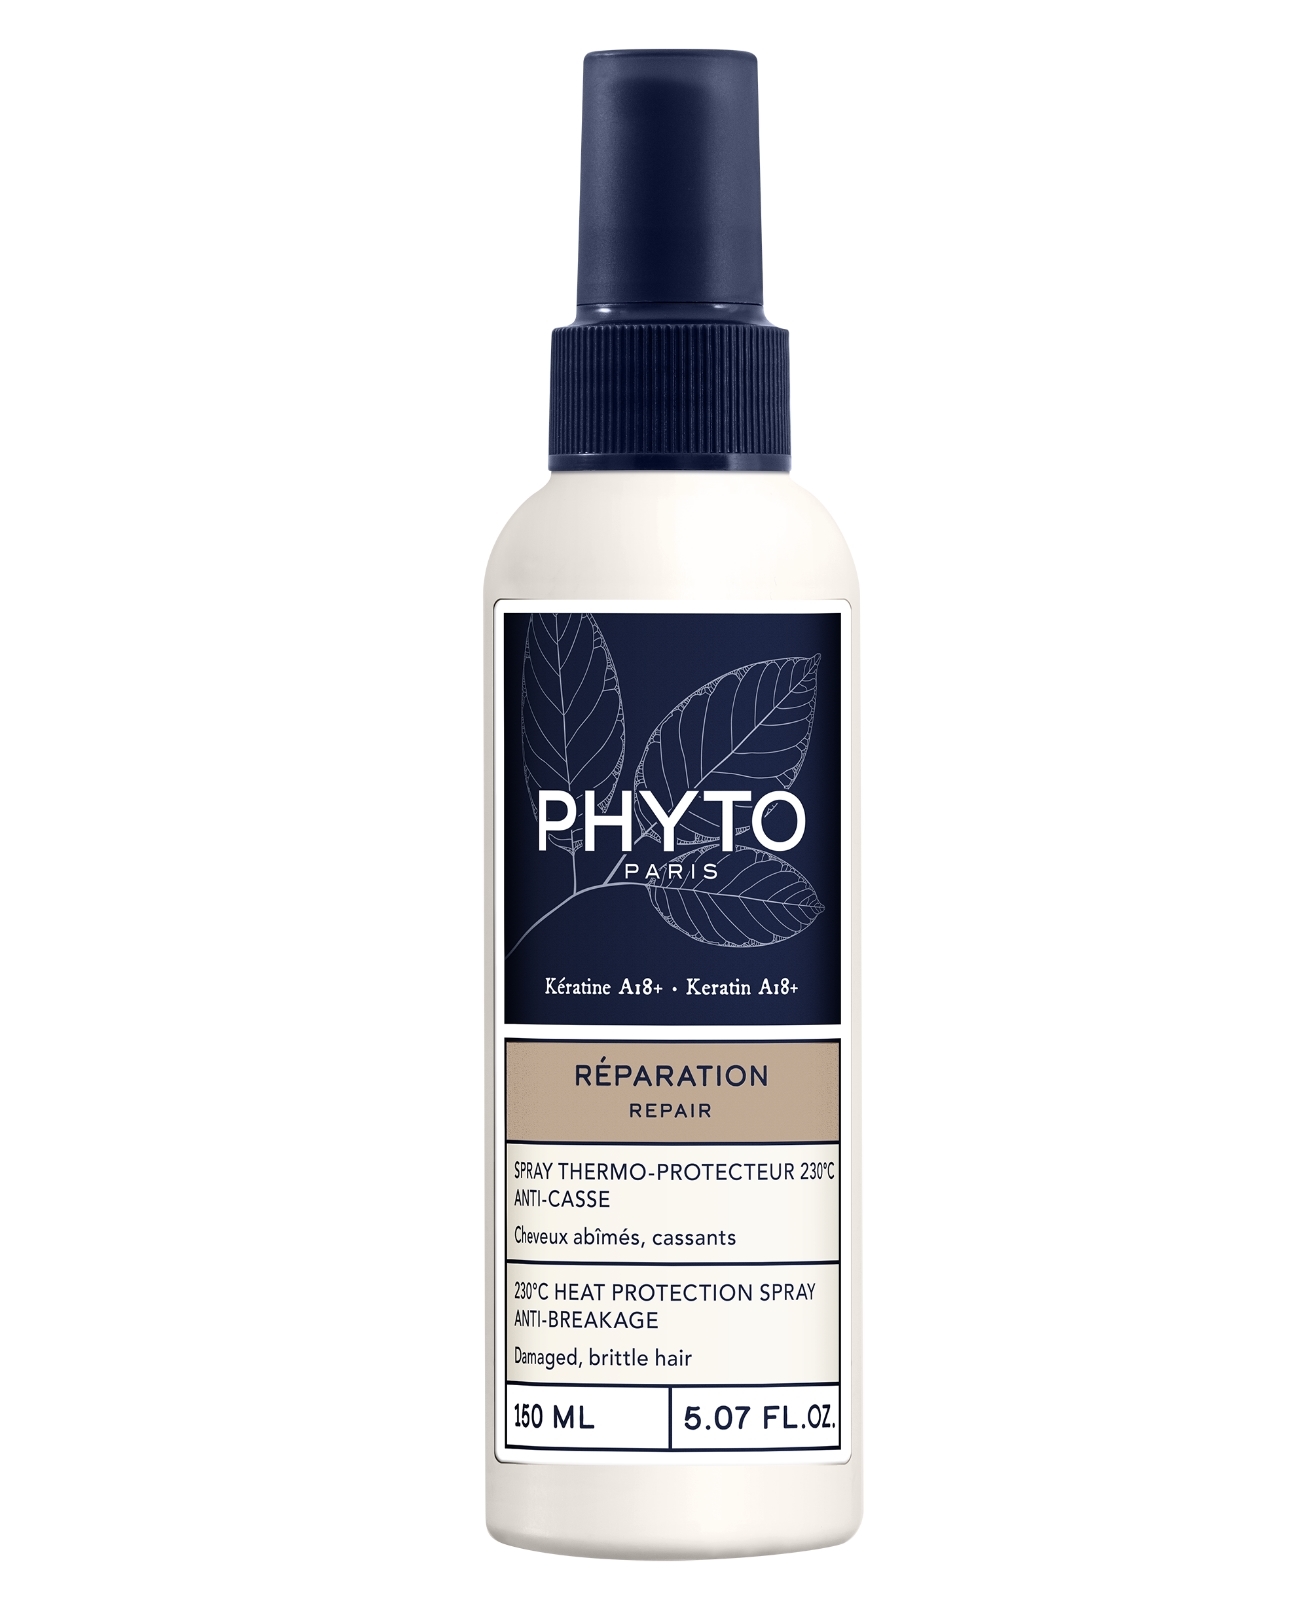 Spray termoprotector antirotura Reparación 230ºC de Phyto (19,90 euros). Con keratina A18+ que protegen el pelo, alisan y reducen el encrespamiento.